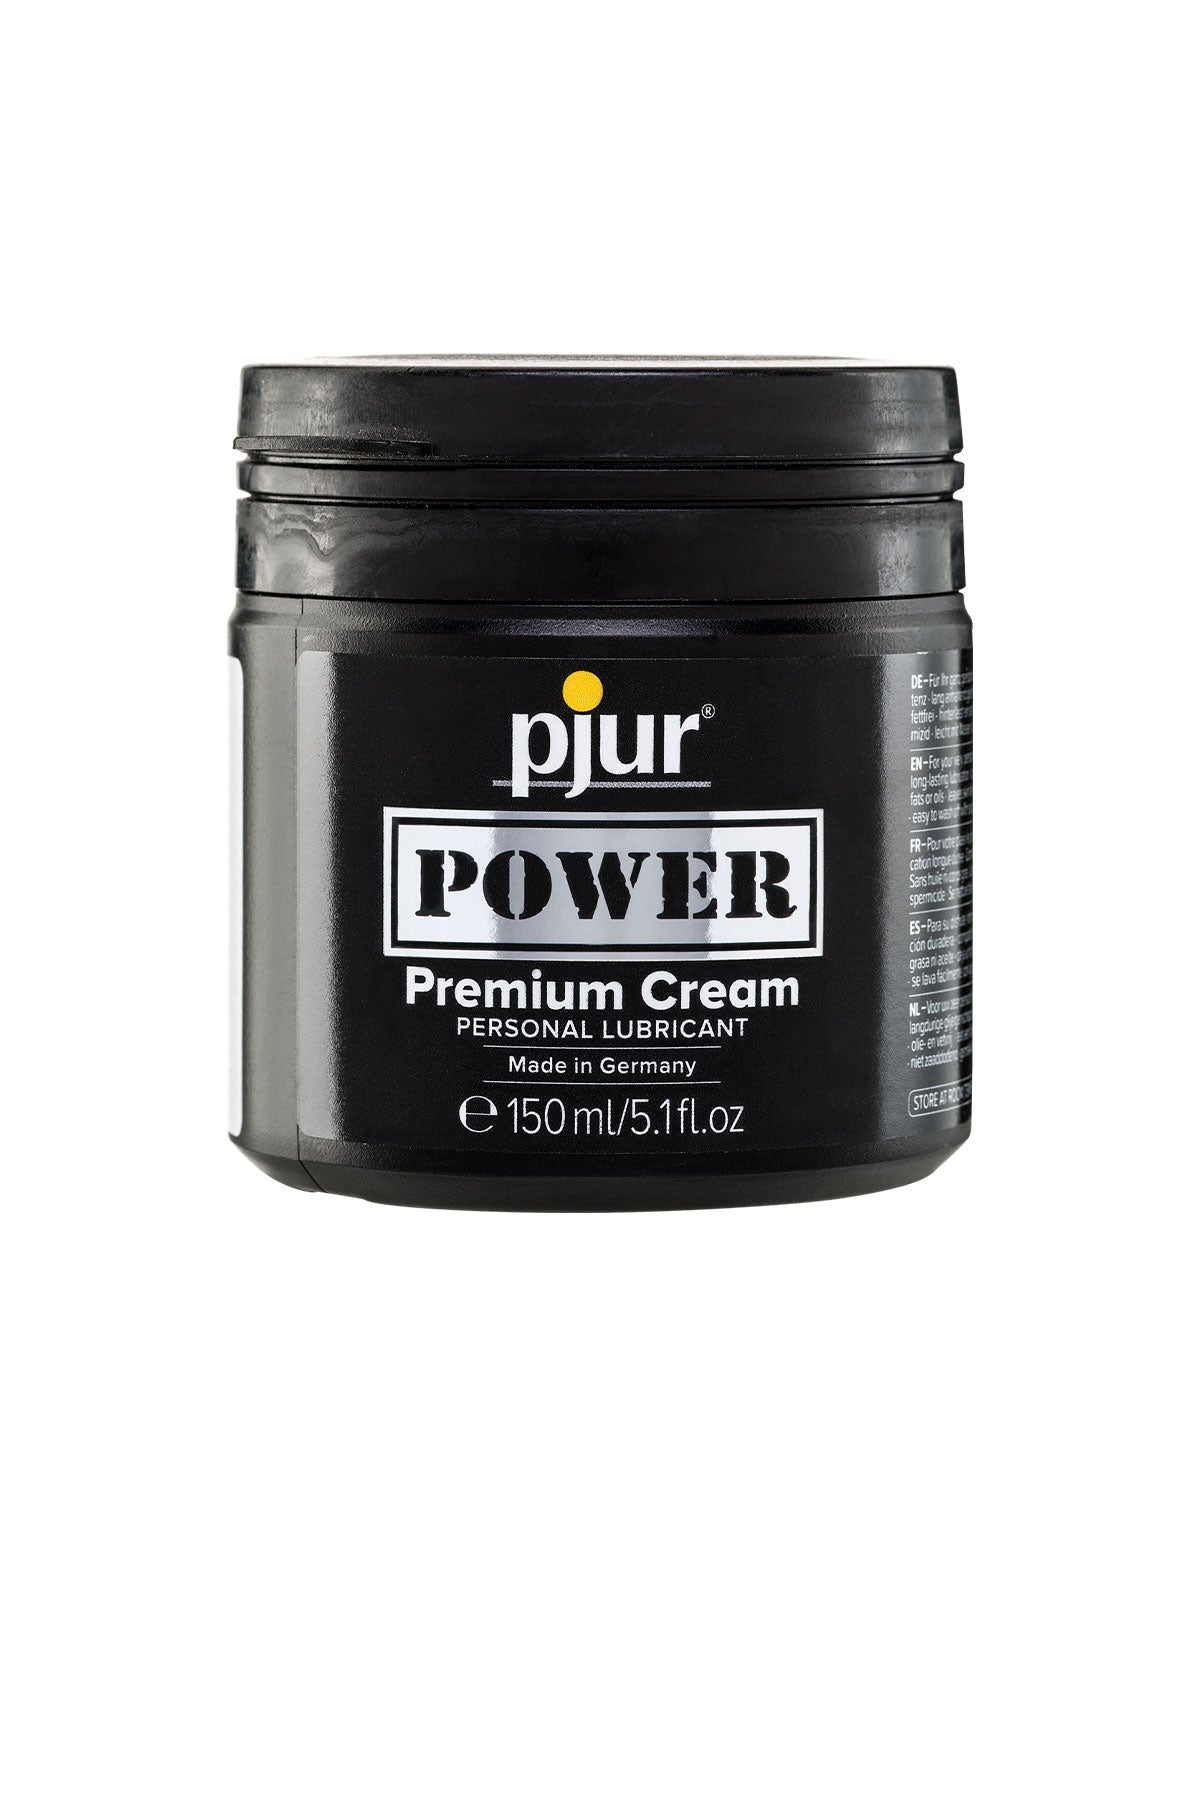 pjur Power Premium Cream 150ml | Matilda's